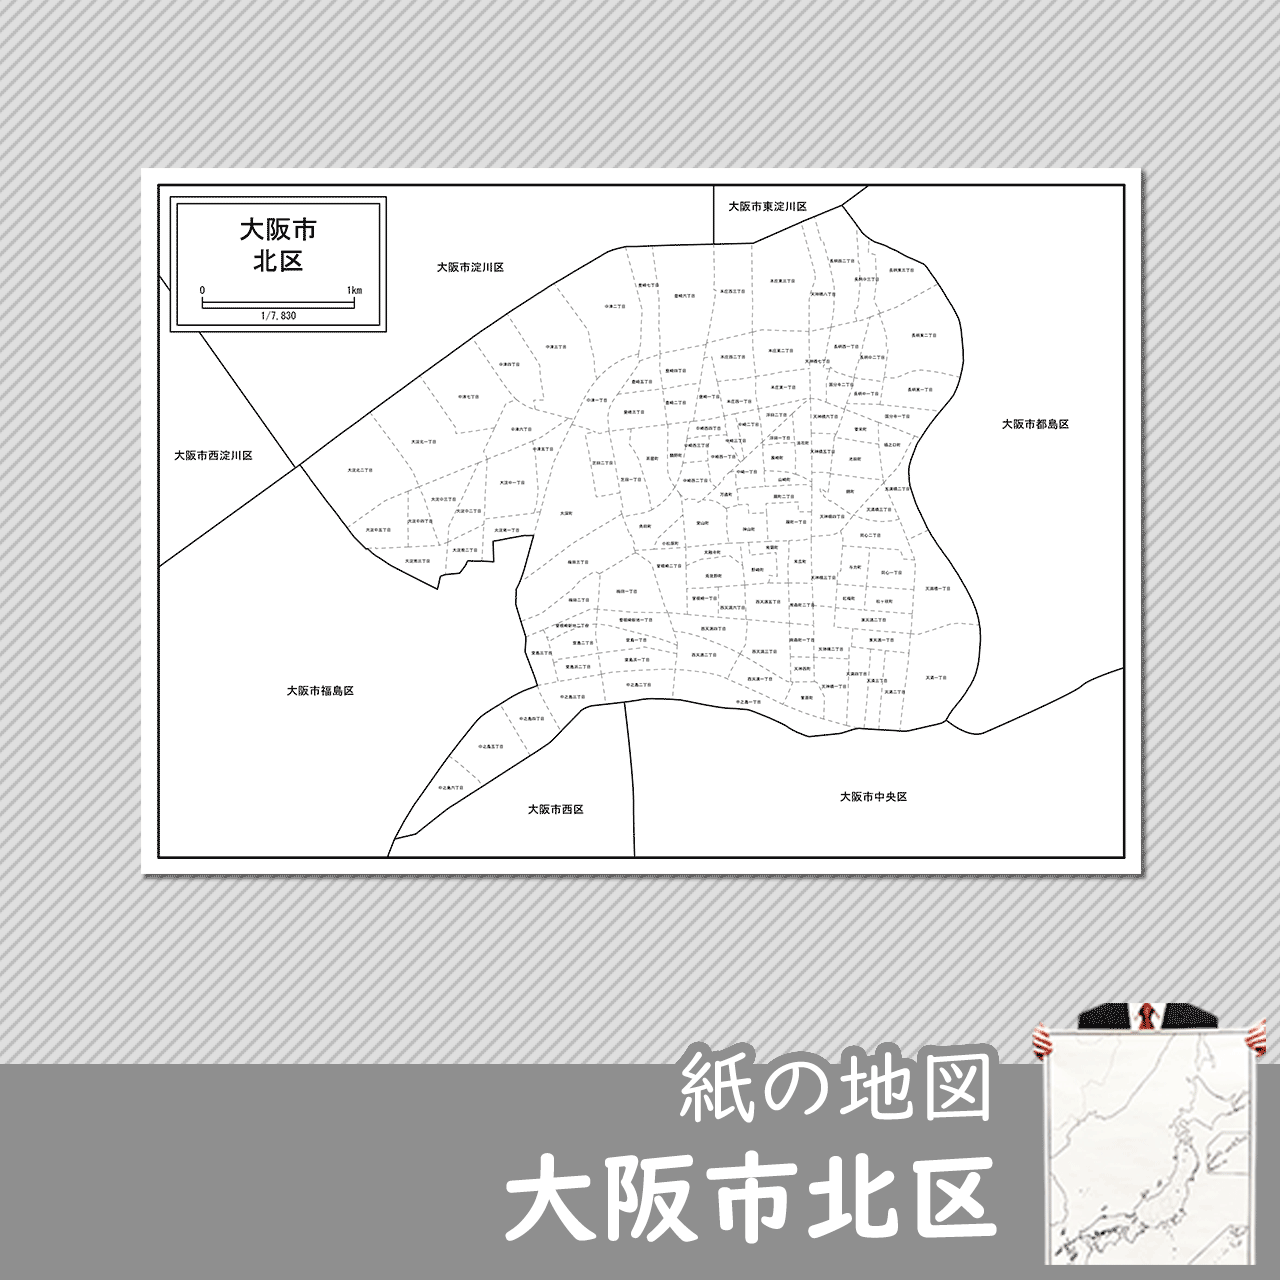 大阪市北区の紙の白地図のサムネイル